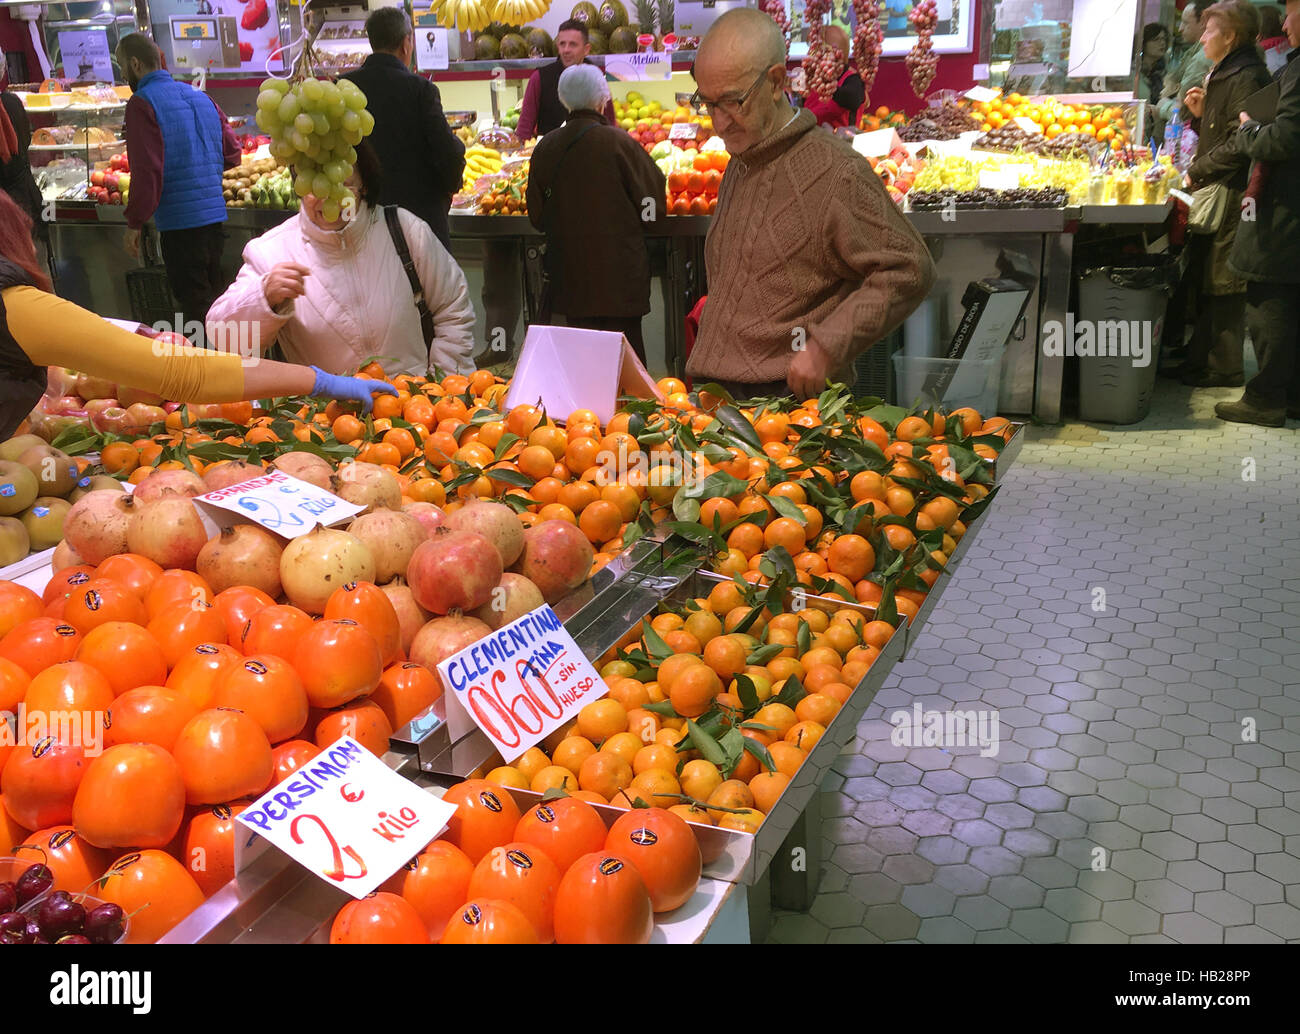 Valence, Espagne. 30Th Nov, 2016. Les oranges et autres fruits sont vendus  au marché central à Valence, Espagne, le 30 novembre 2016. Pendant le début  de la nouvelle saison, le prix de